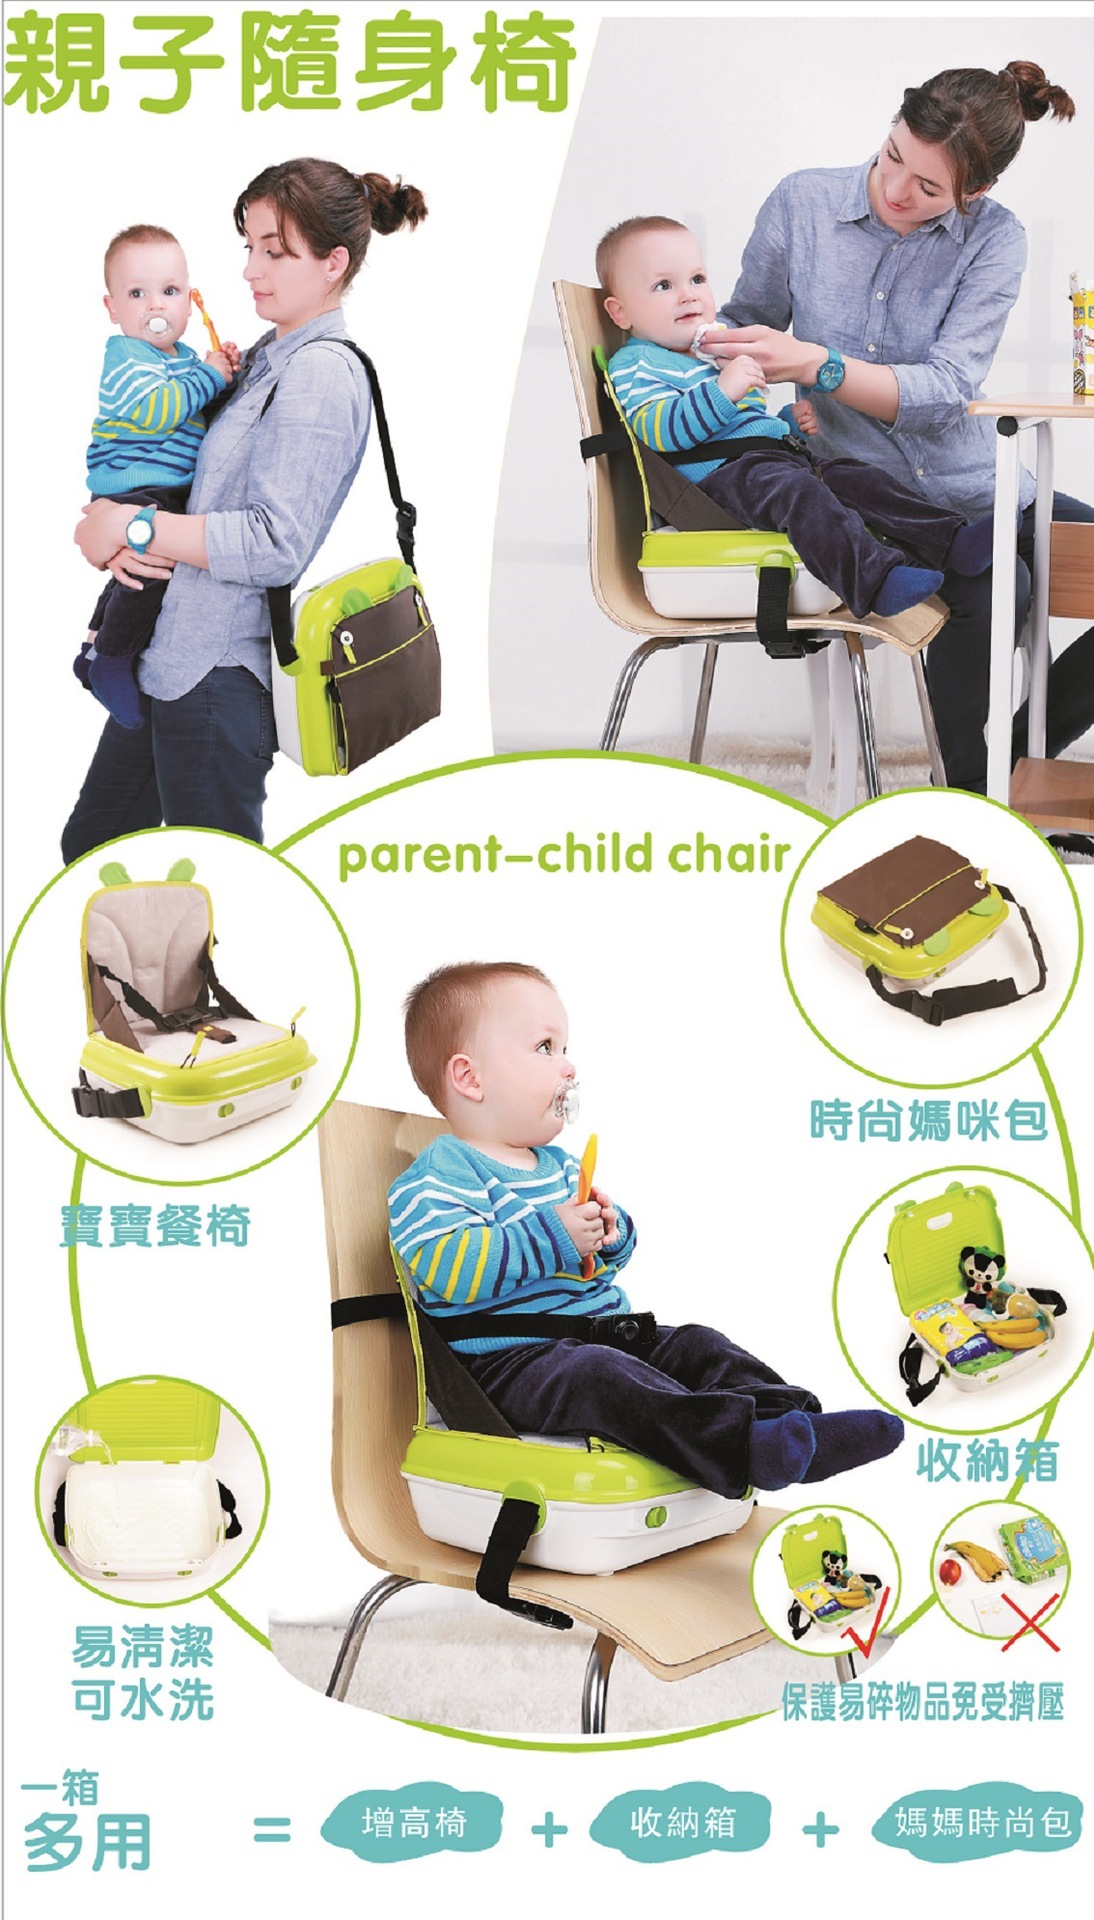 盛博奥便携式宝宝餐椅,产品编号36466